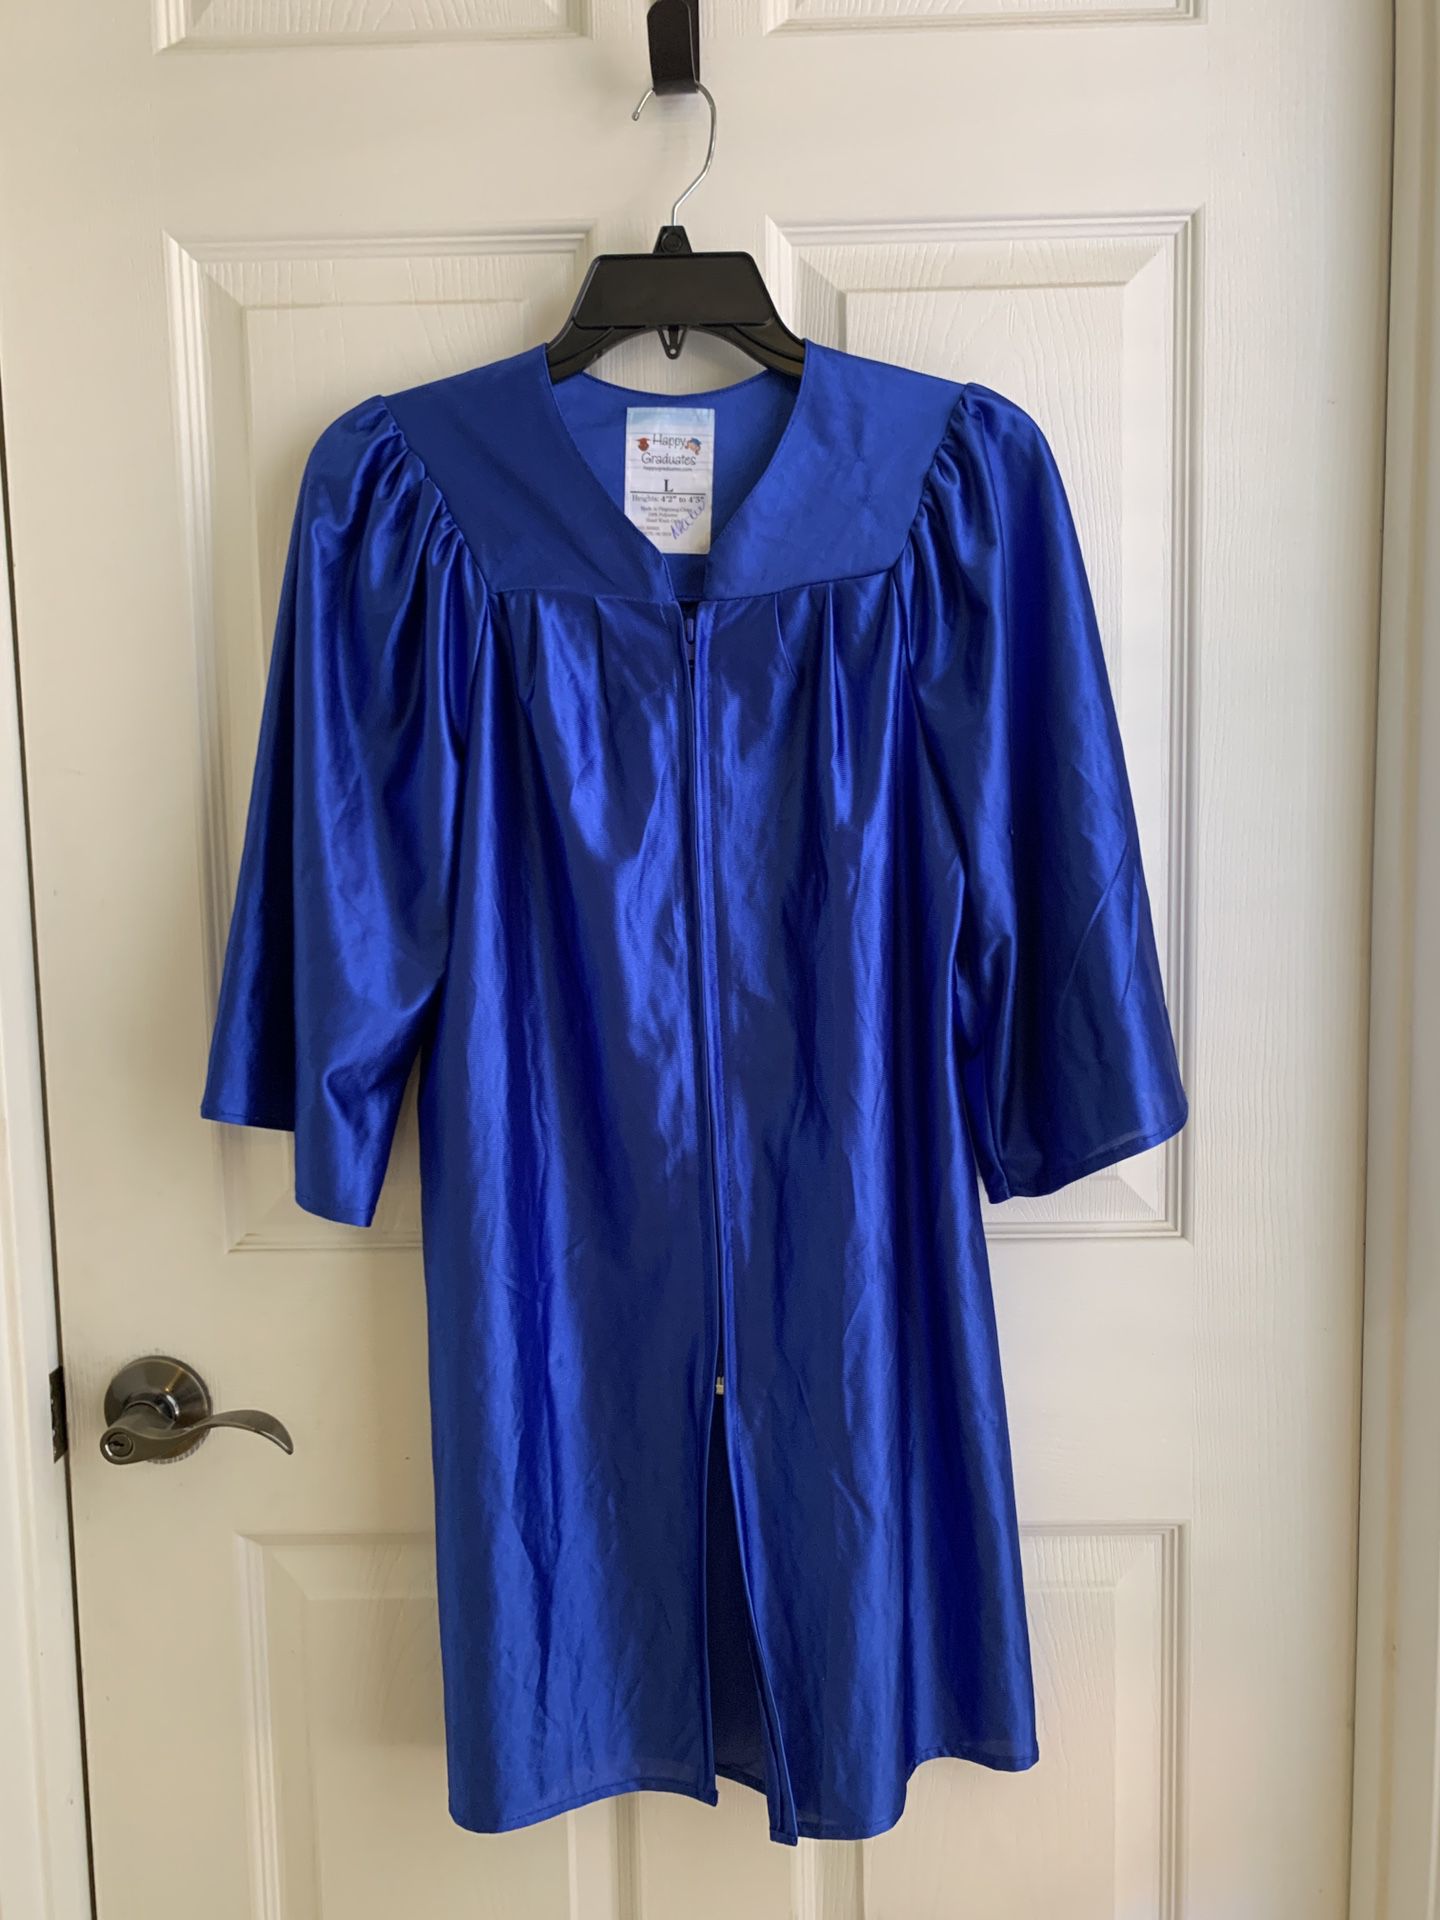 Shiny Royal Blue  Graduation Gown Size 4’2”-4’5 Includes Cap